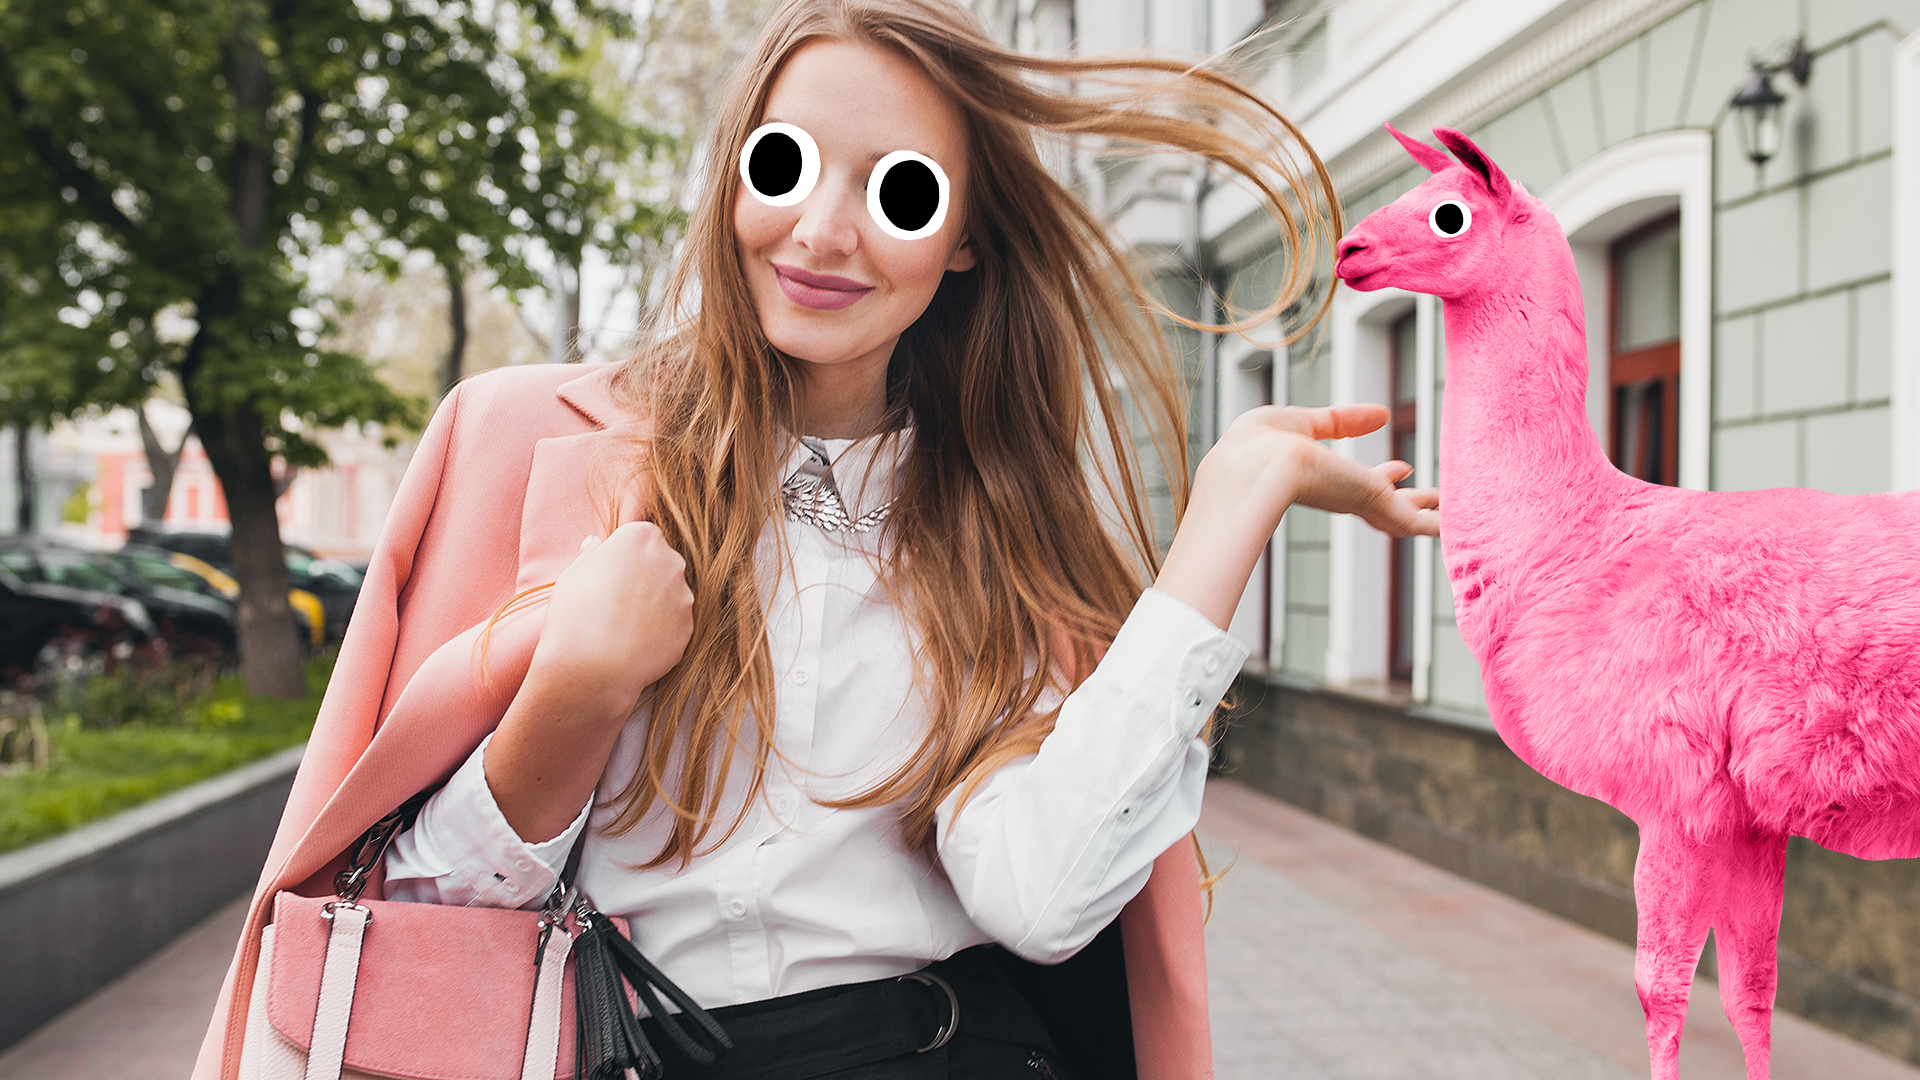 A stylish woman walking past a pink llama